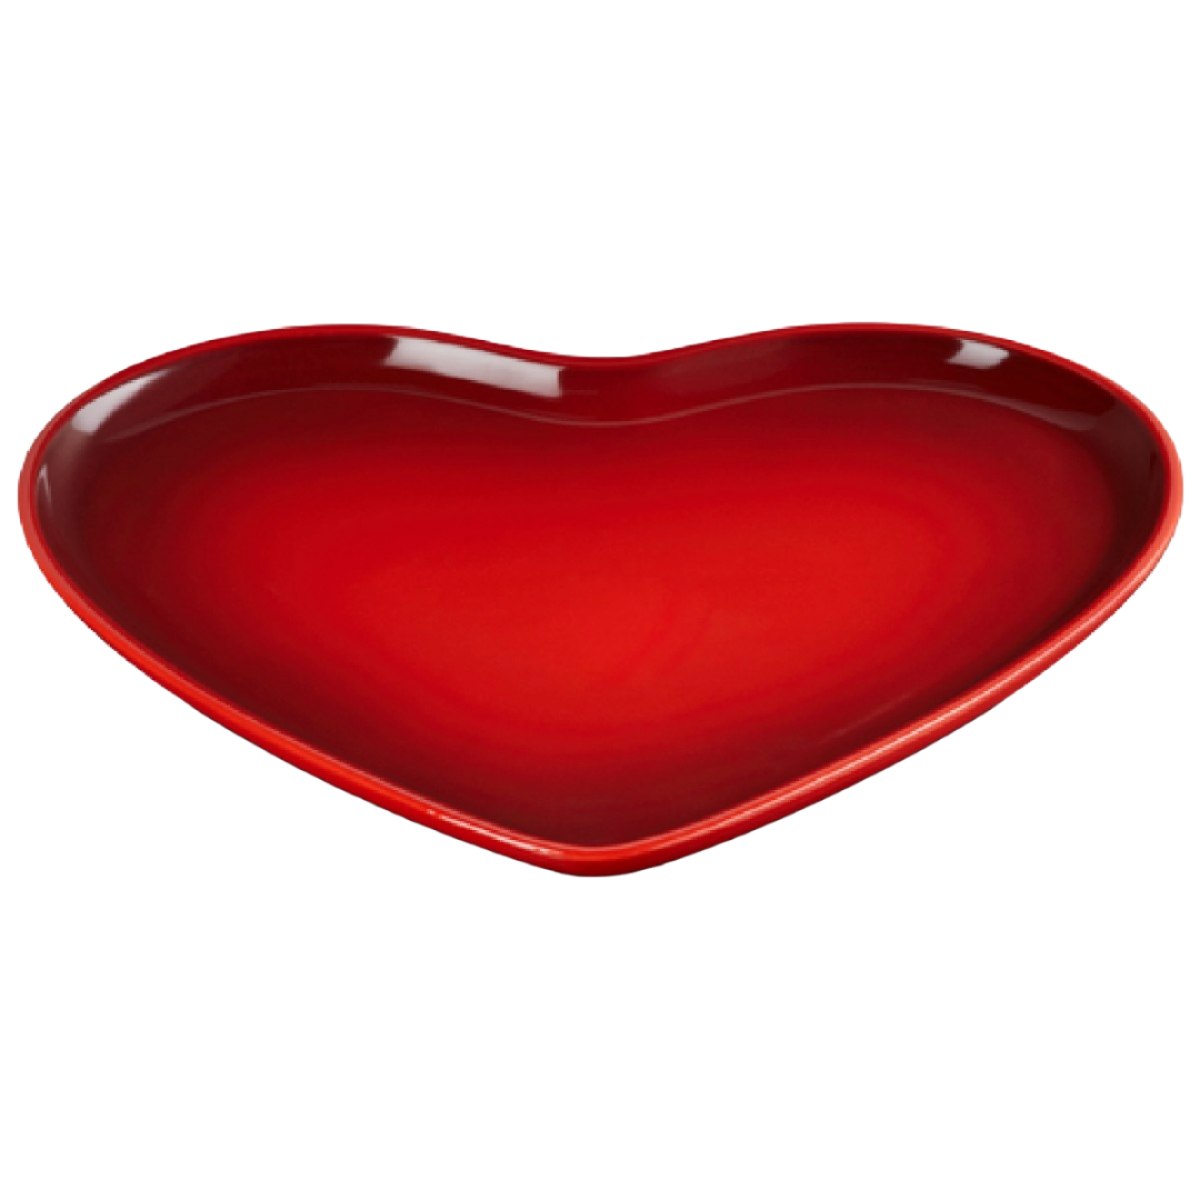 Le Creuset keramički tanjir srce, 32 cm